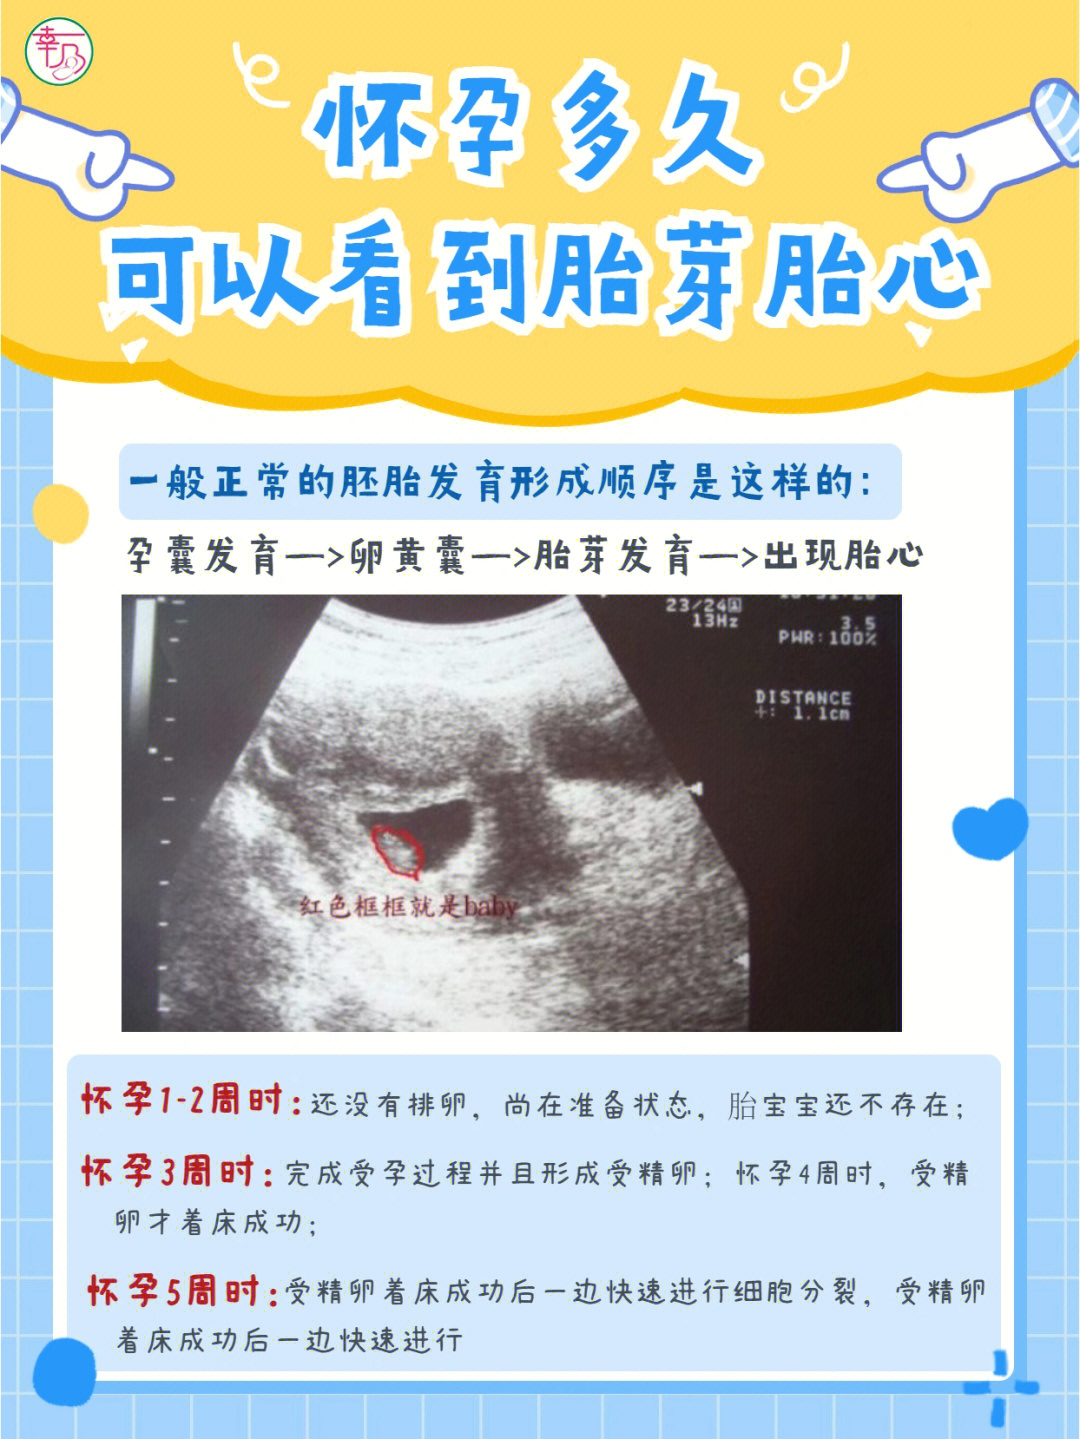 96一般正常的胚胎发育形成顺序是这样的:孕囊发育—